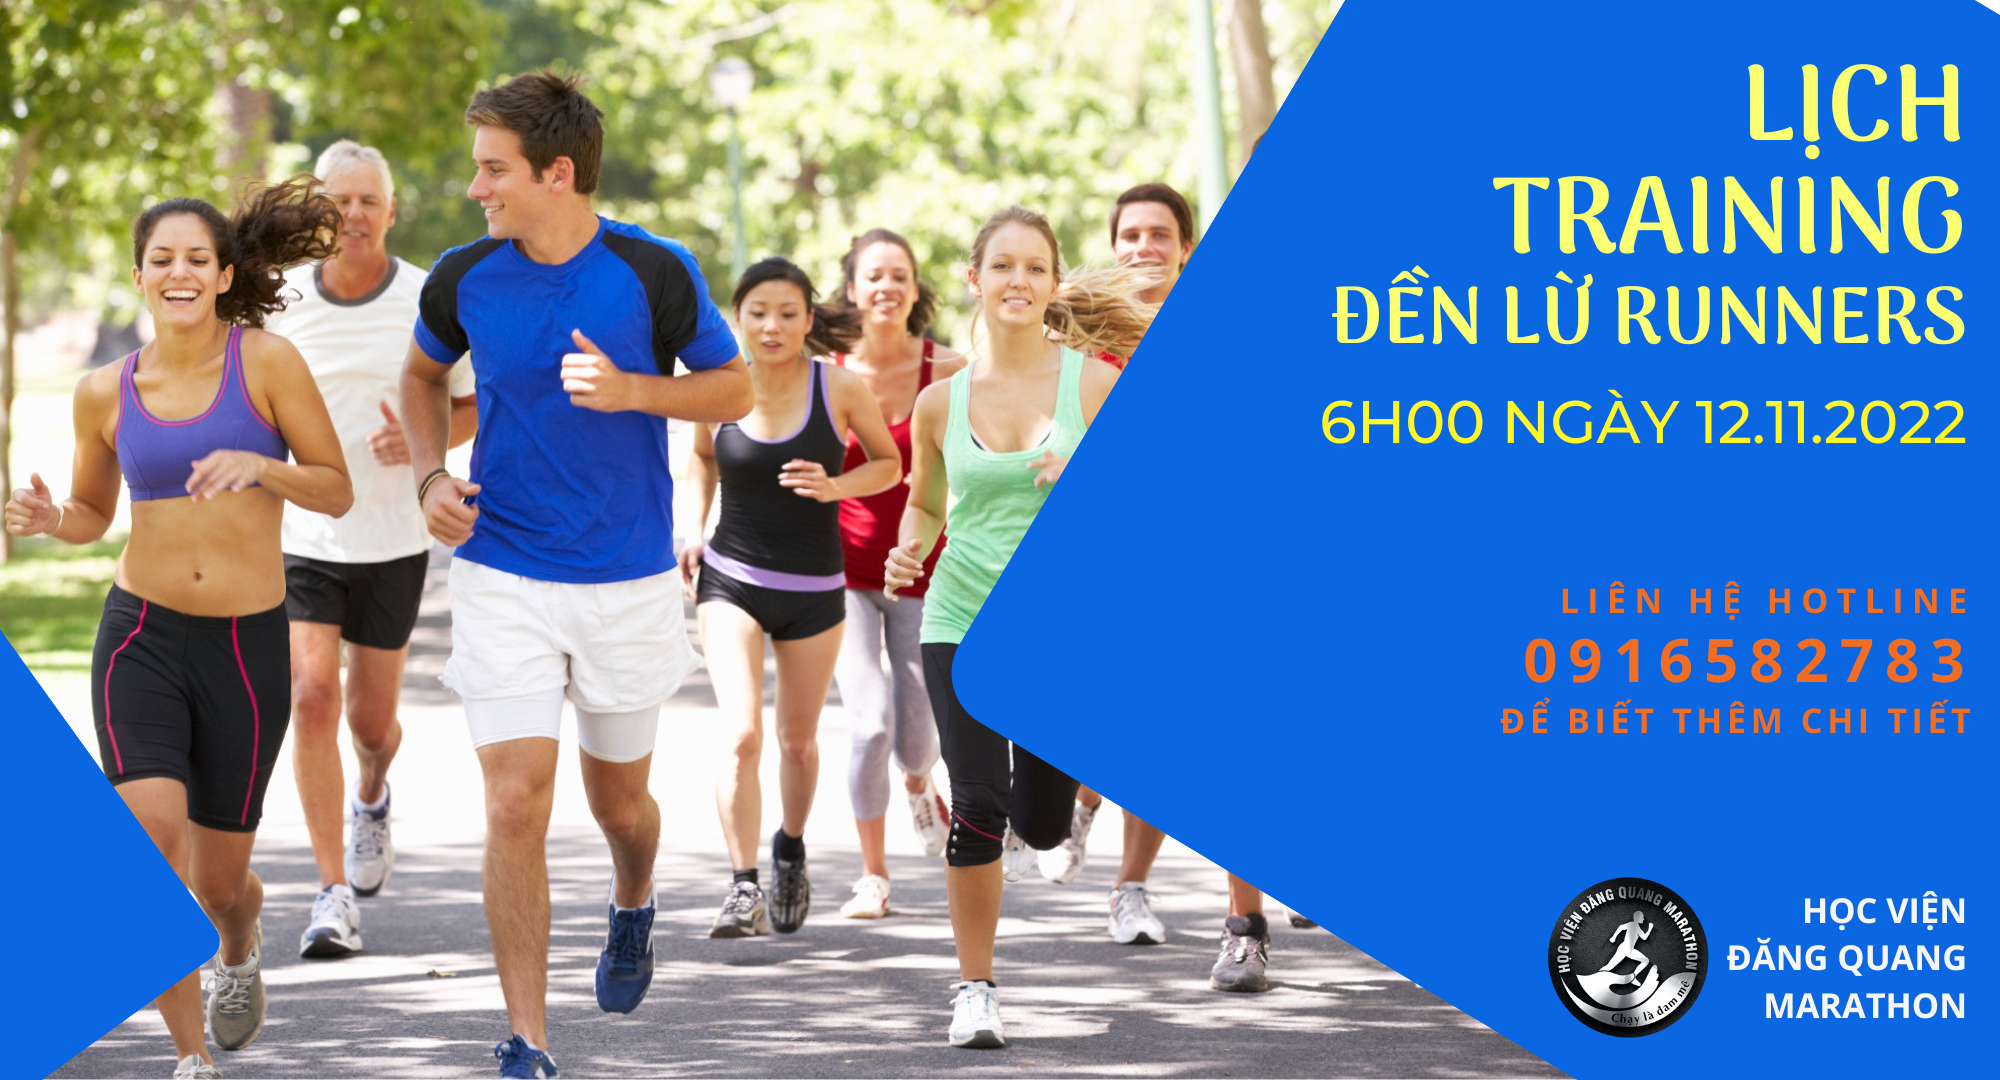 Lịch training 12.11.2022 tại Hà Nội - Chỉnh dáng chạy bộ cho CLB Đền Lừ Runners (DLR)